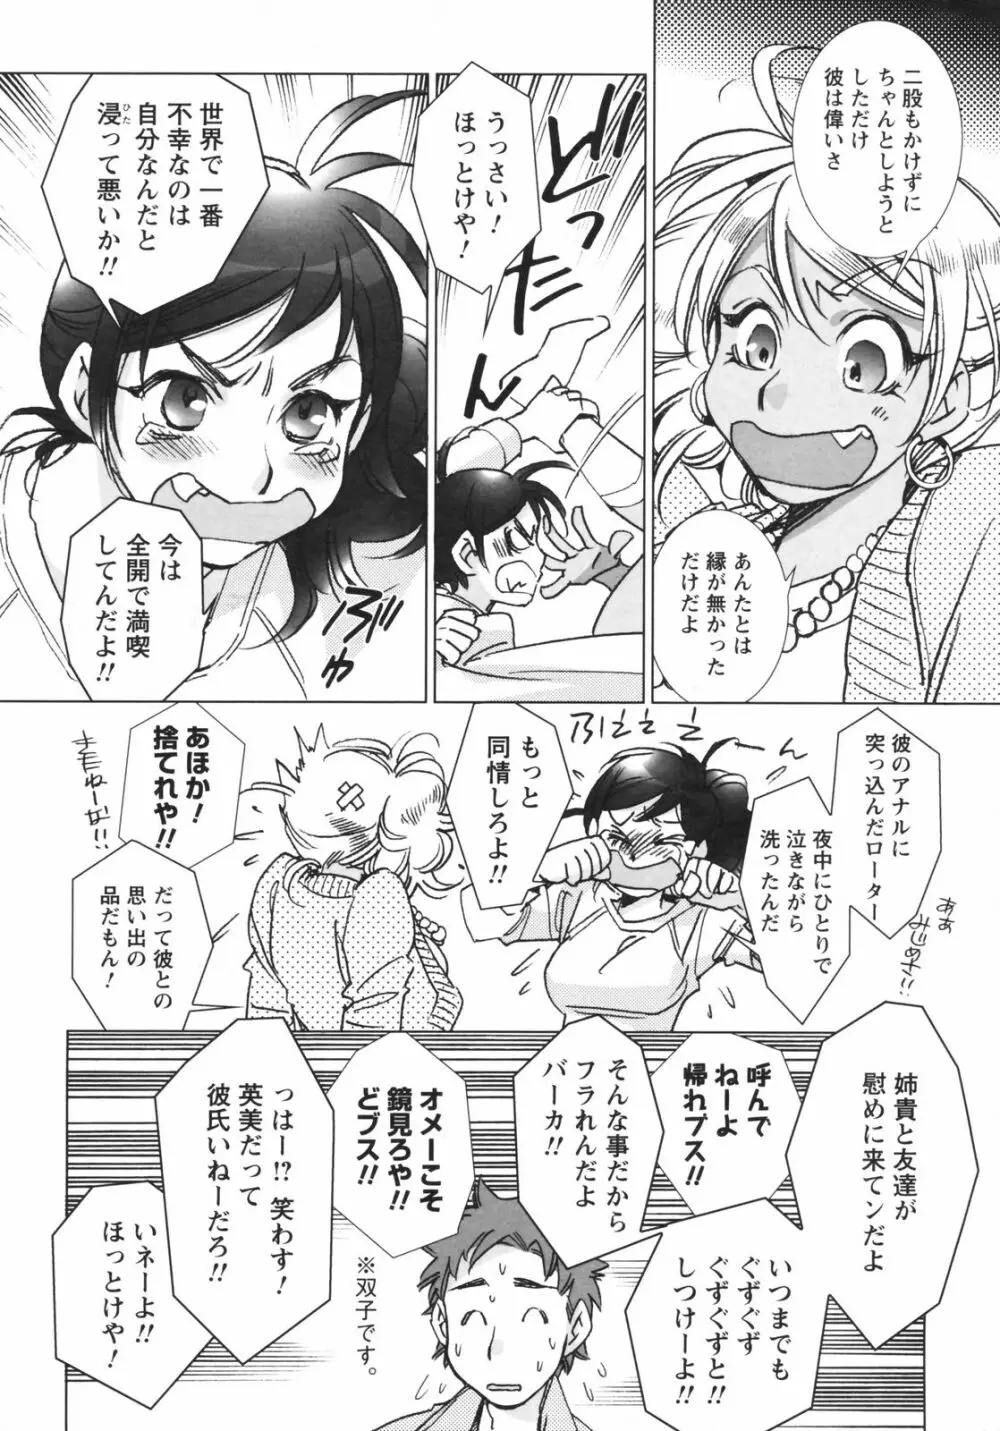 メンズヤングスペシャルIKAZUCHI雷 Vol.5 2008年3月号増刊 16ページ